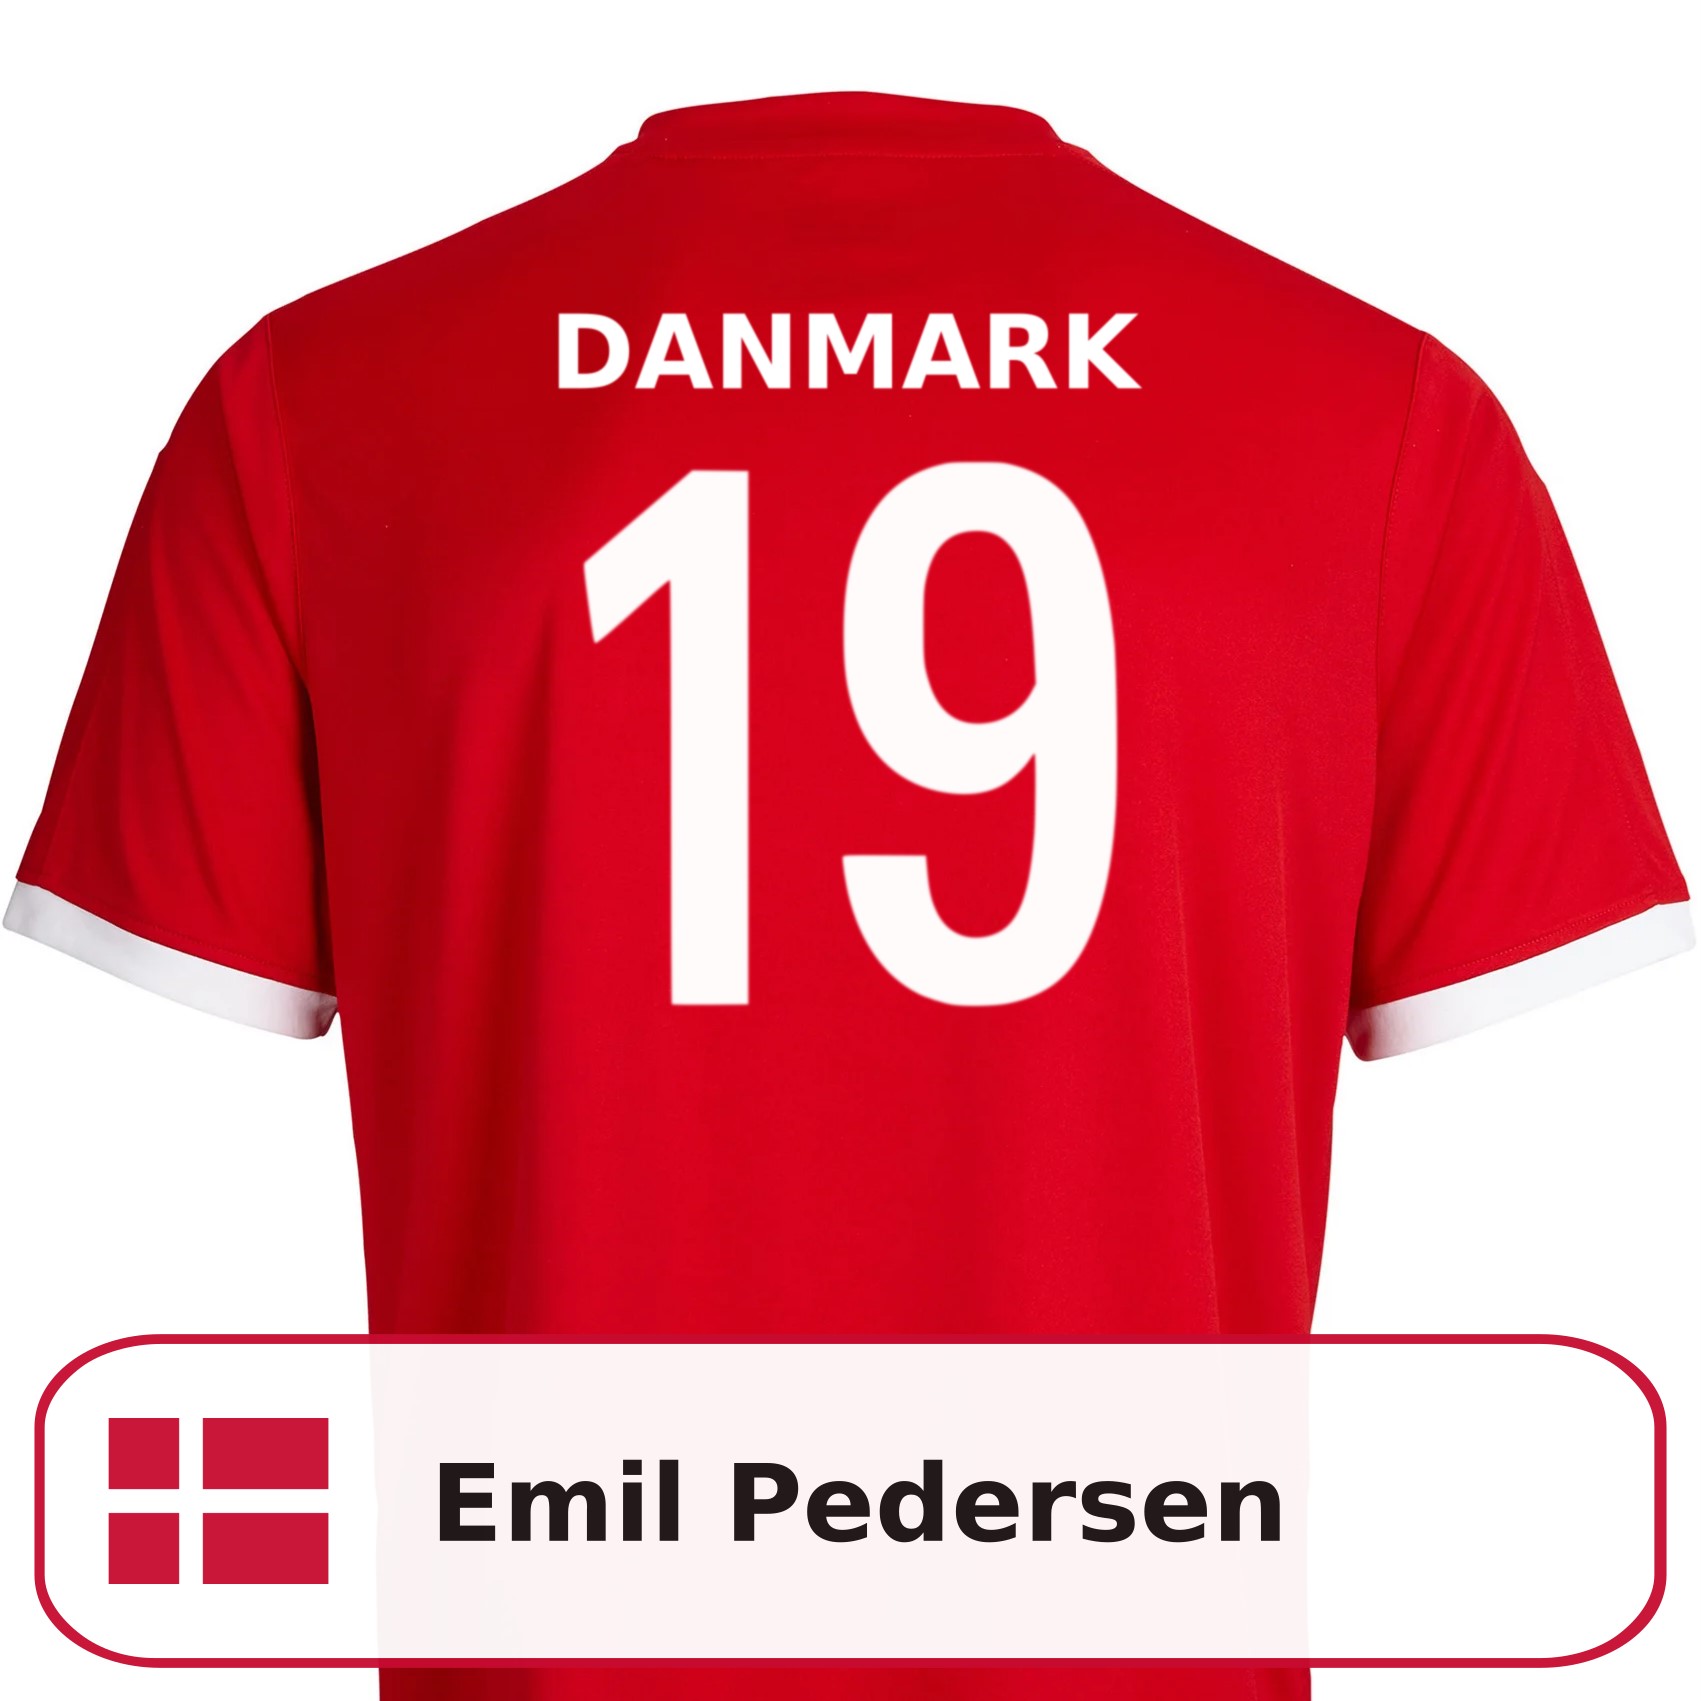 Emil Pedersen